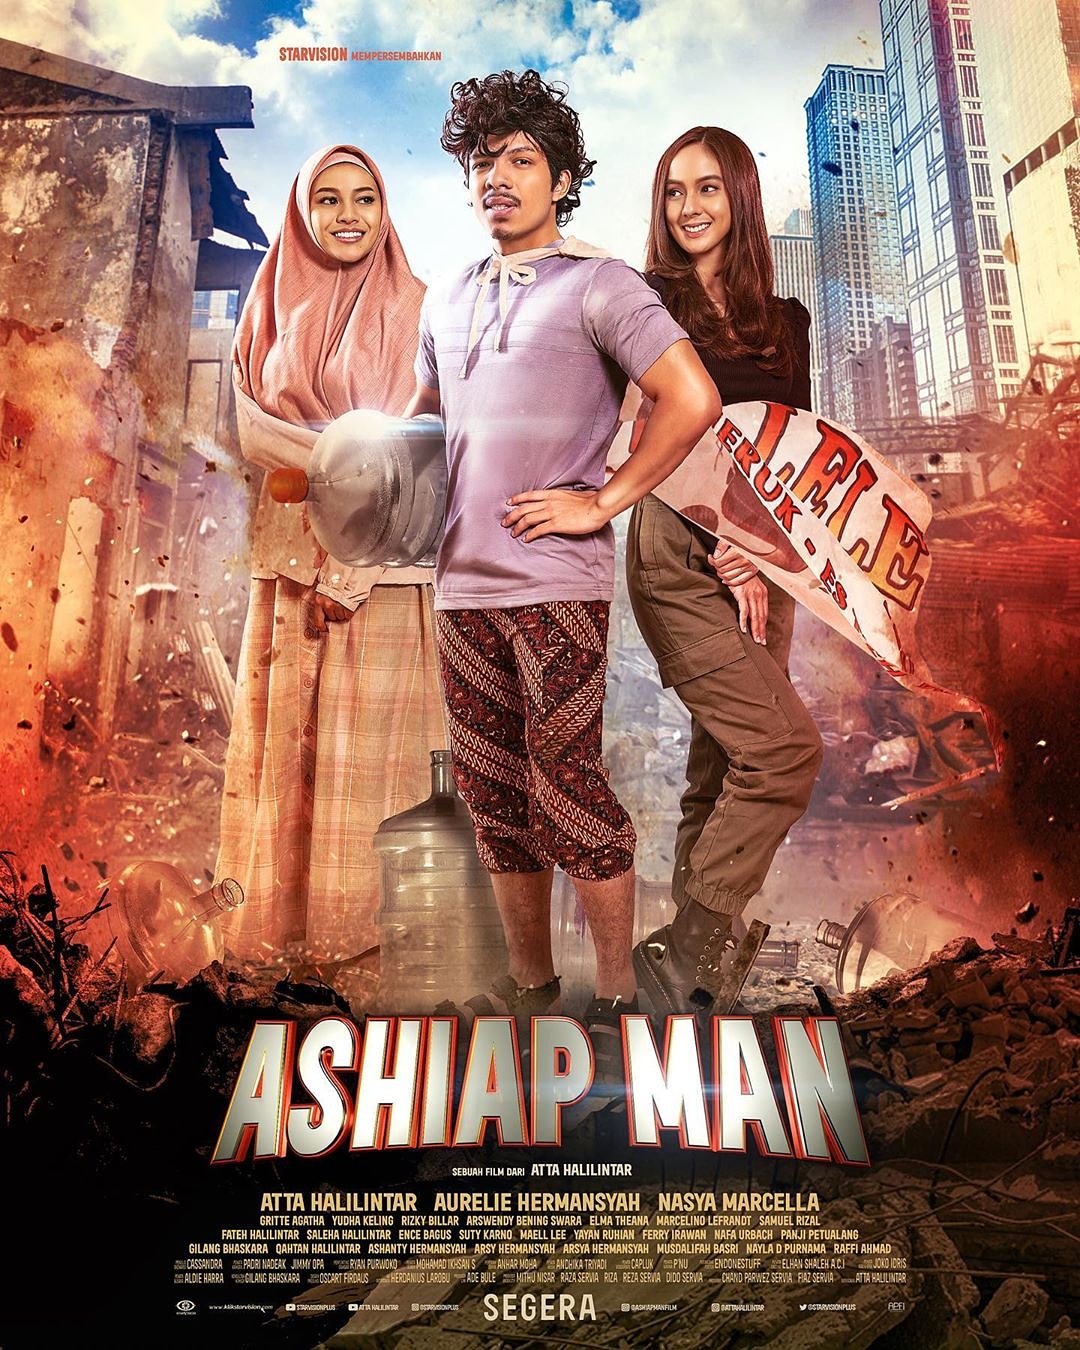 Ashiap Man (Film Indonesia) : Sinopsis dan Review